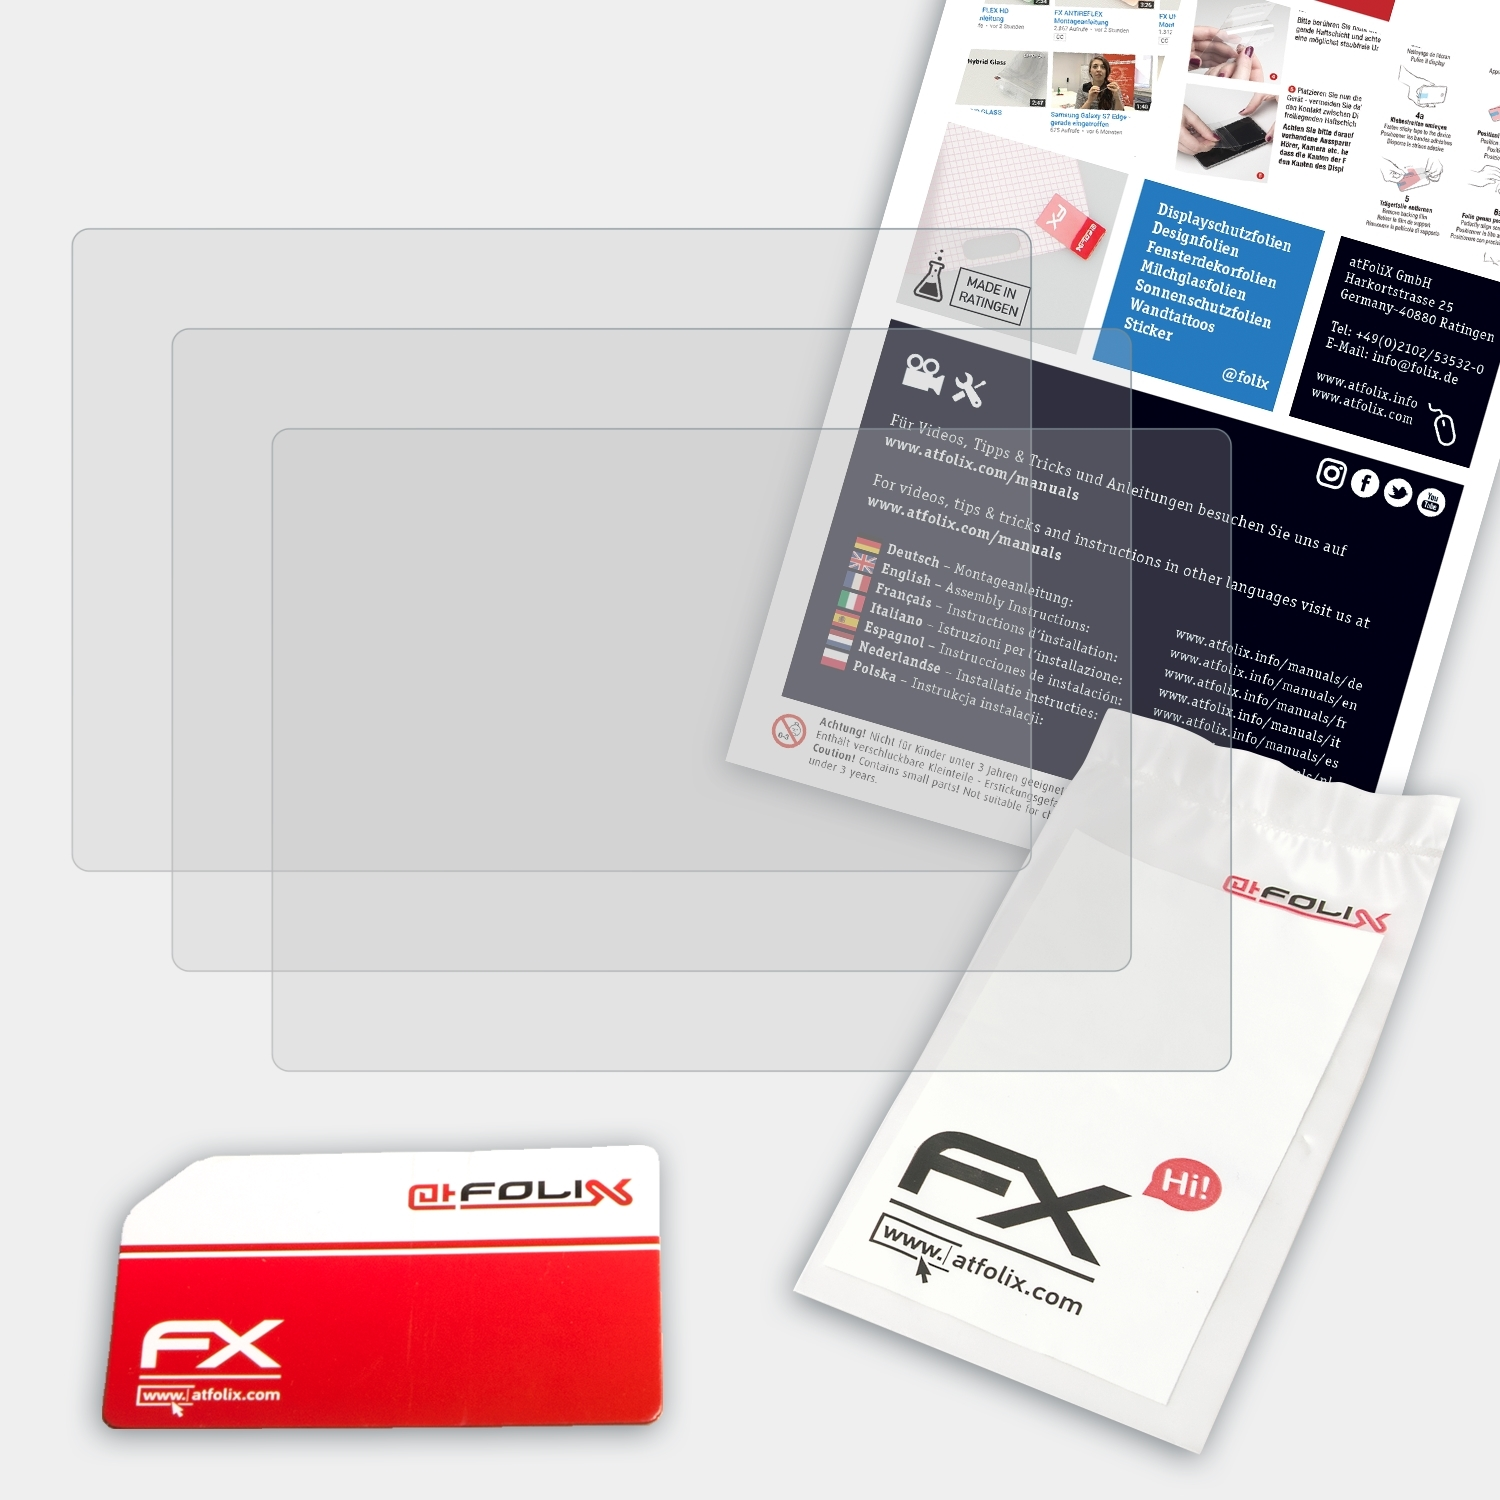 ATFOLIX 3x FX-Antireflex Displayschutz(für Sony DSC-HX100V)